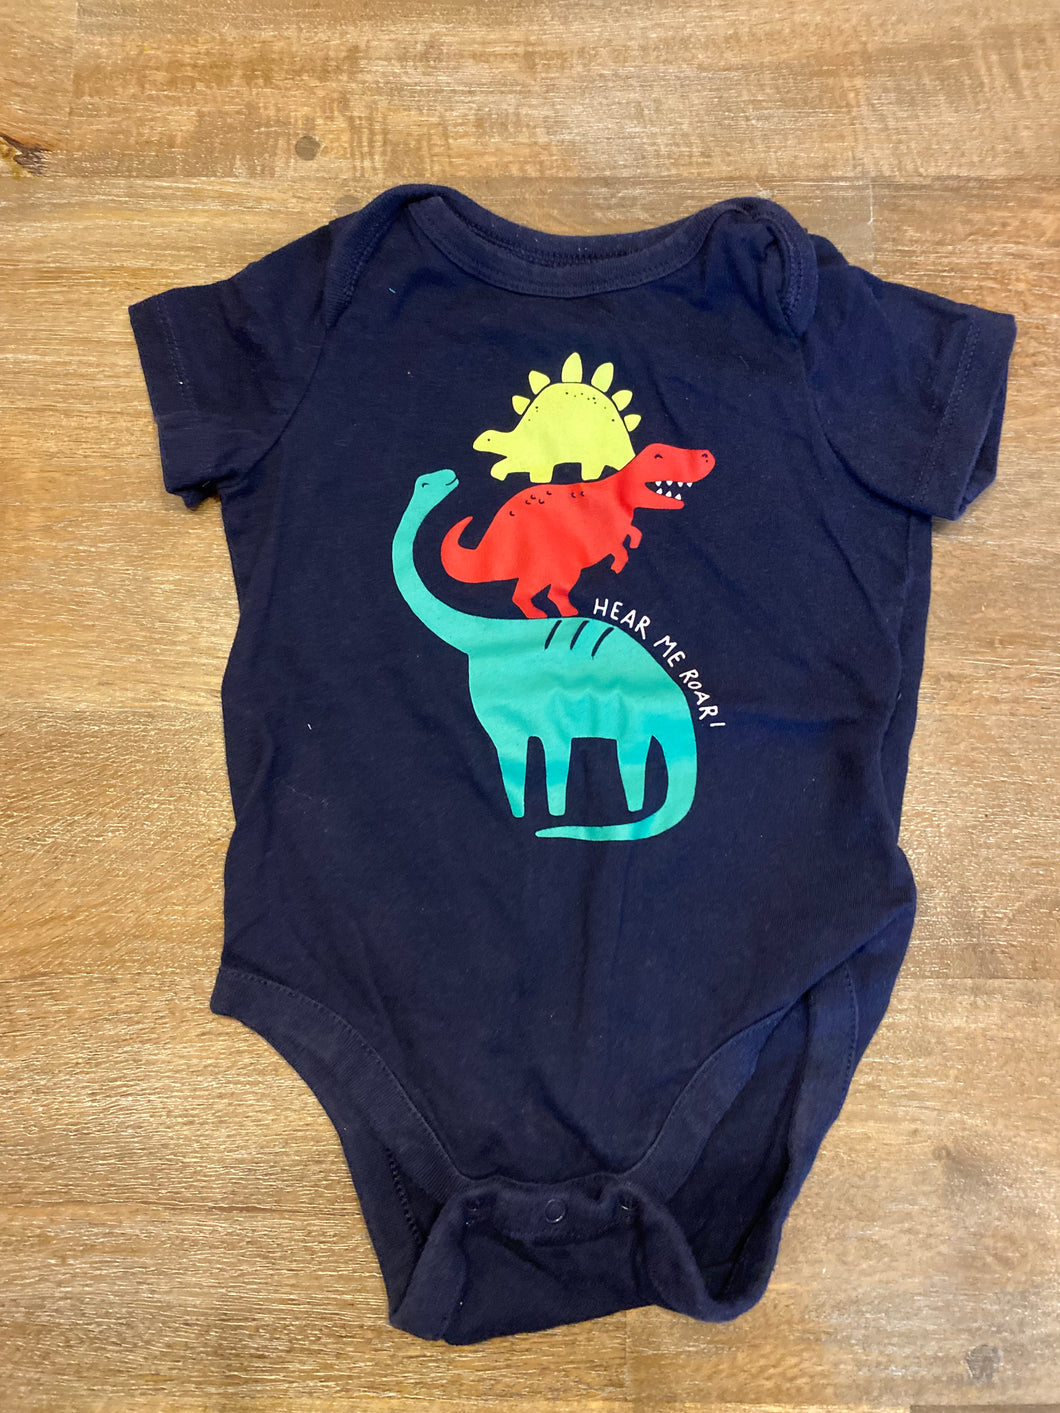 Baby Gap 6-12 month dinosaur onesie 6 months